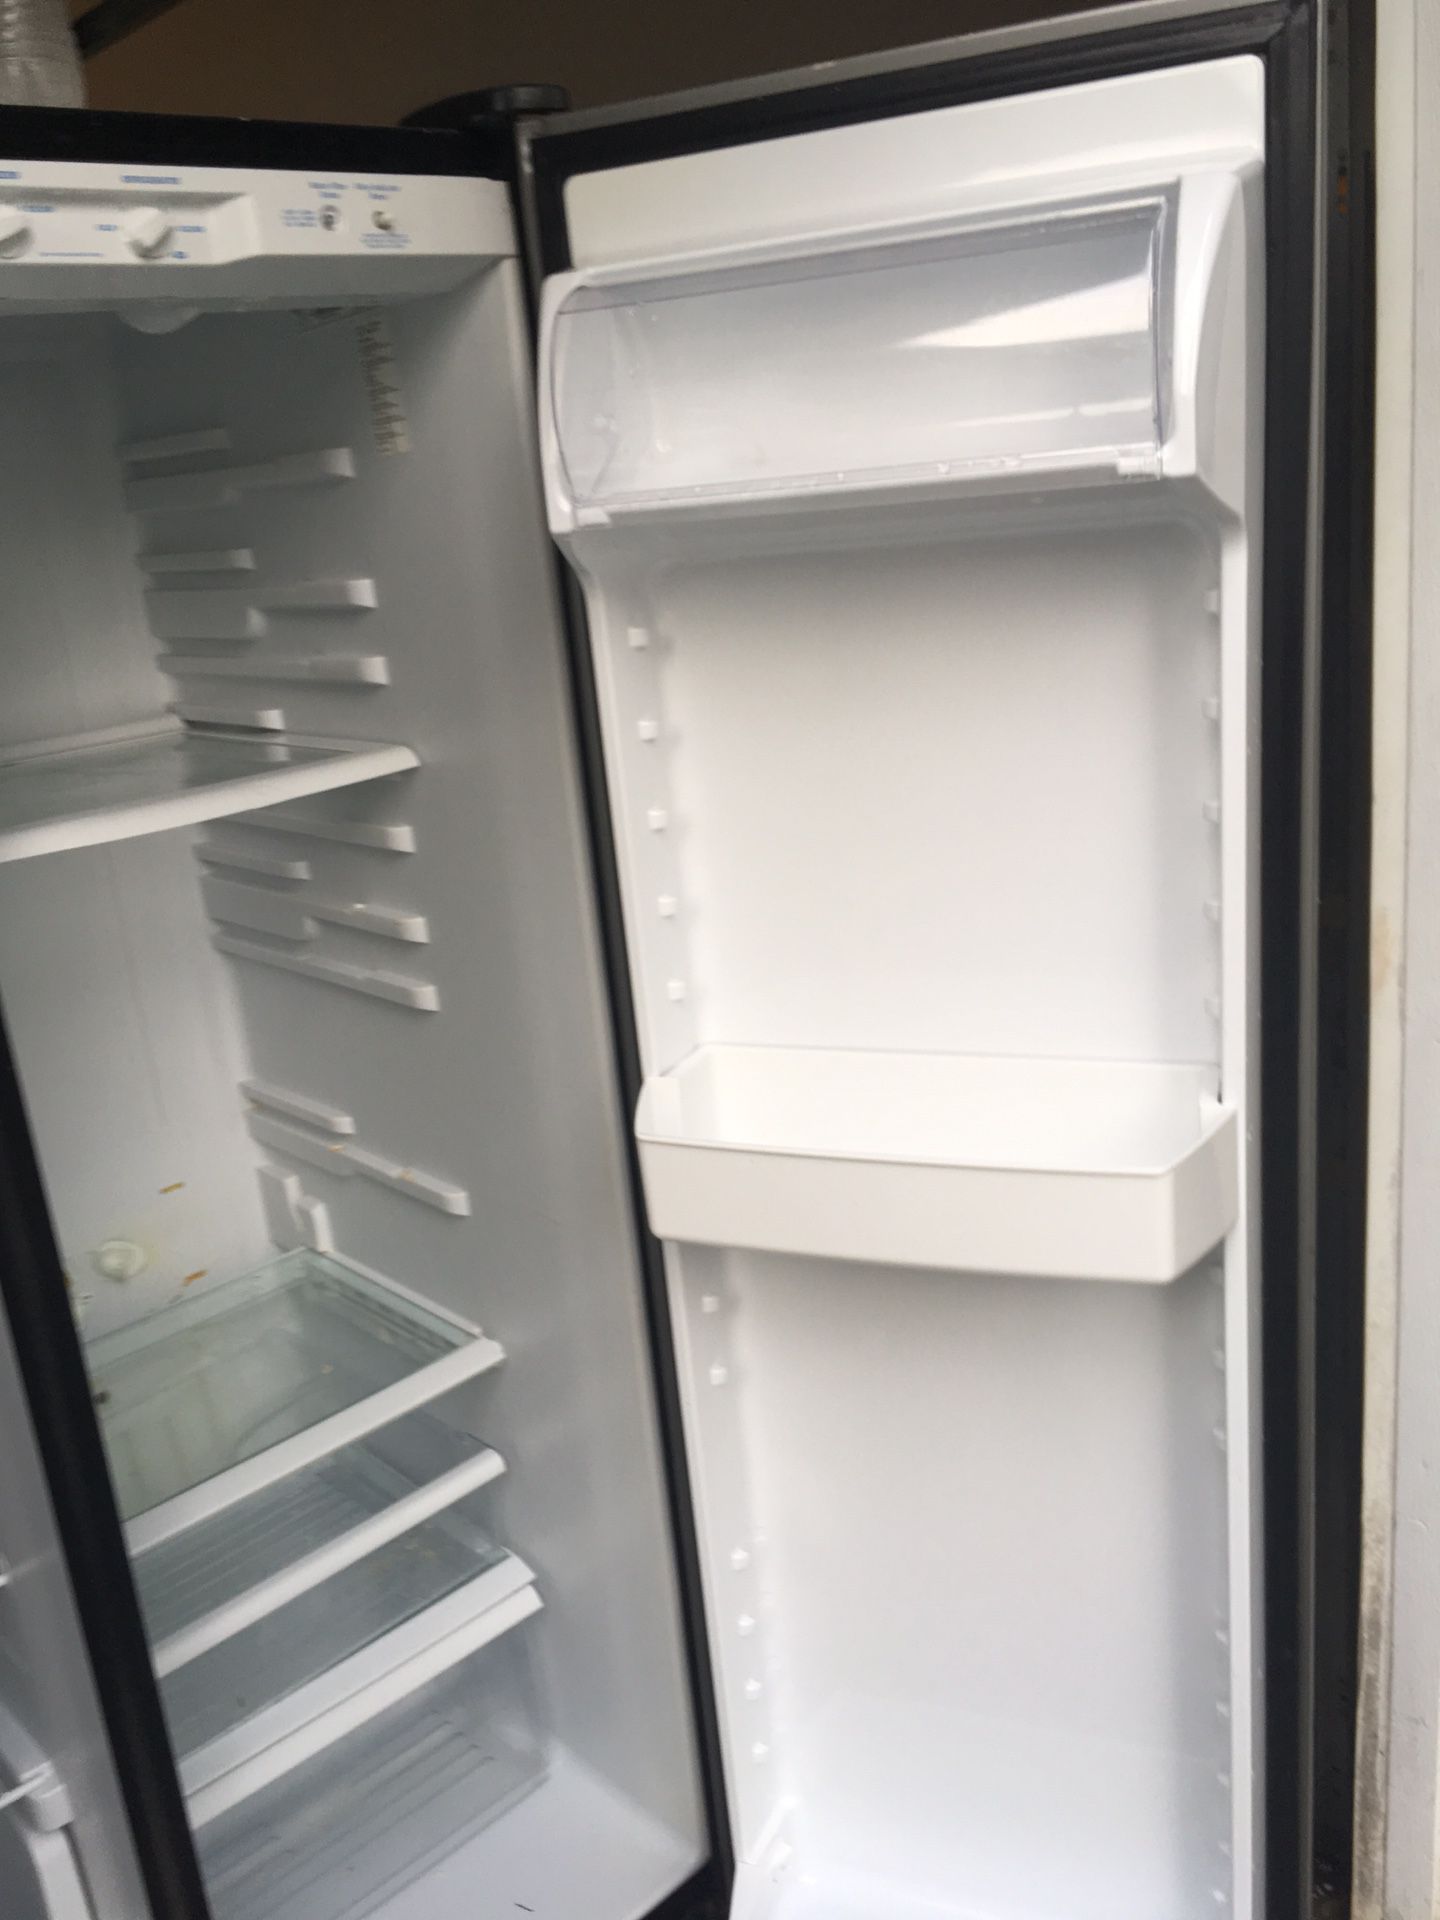 Freezers and fridge